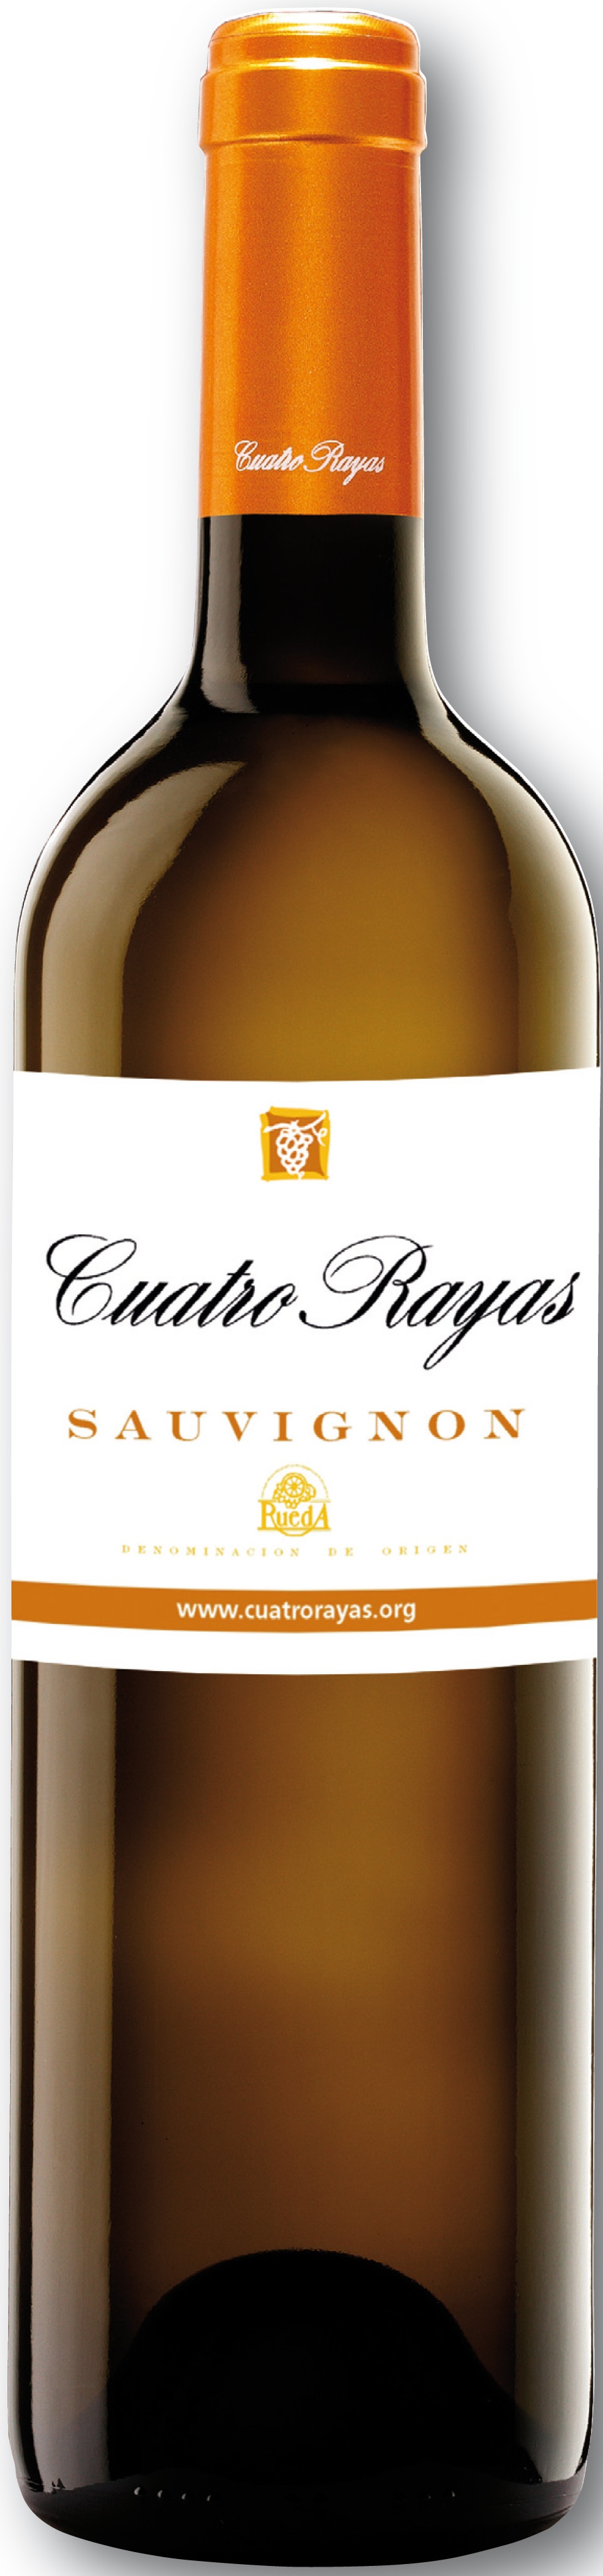 Imagen de la botella de Vino Cuatro Rayas Sauvignon